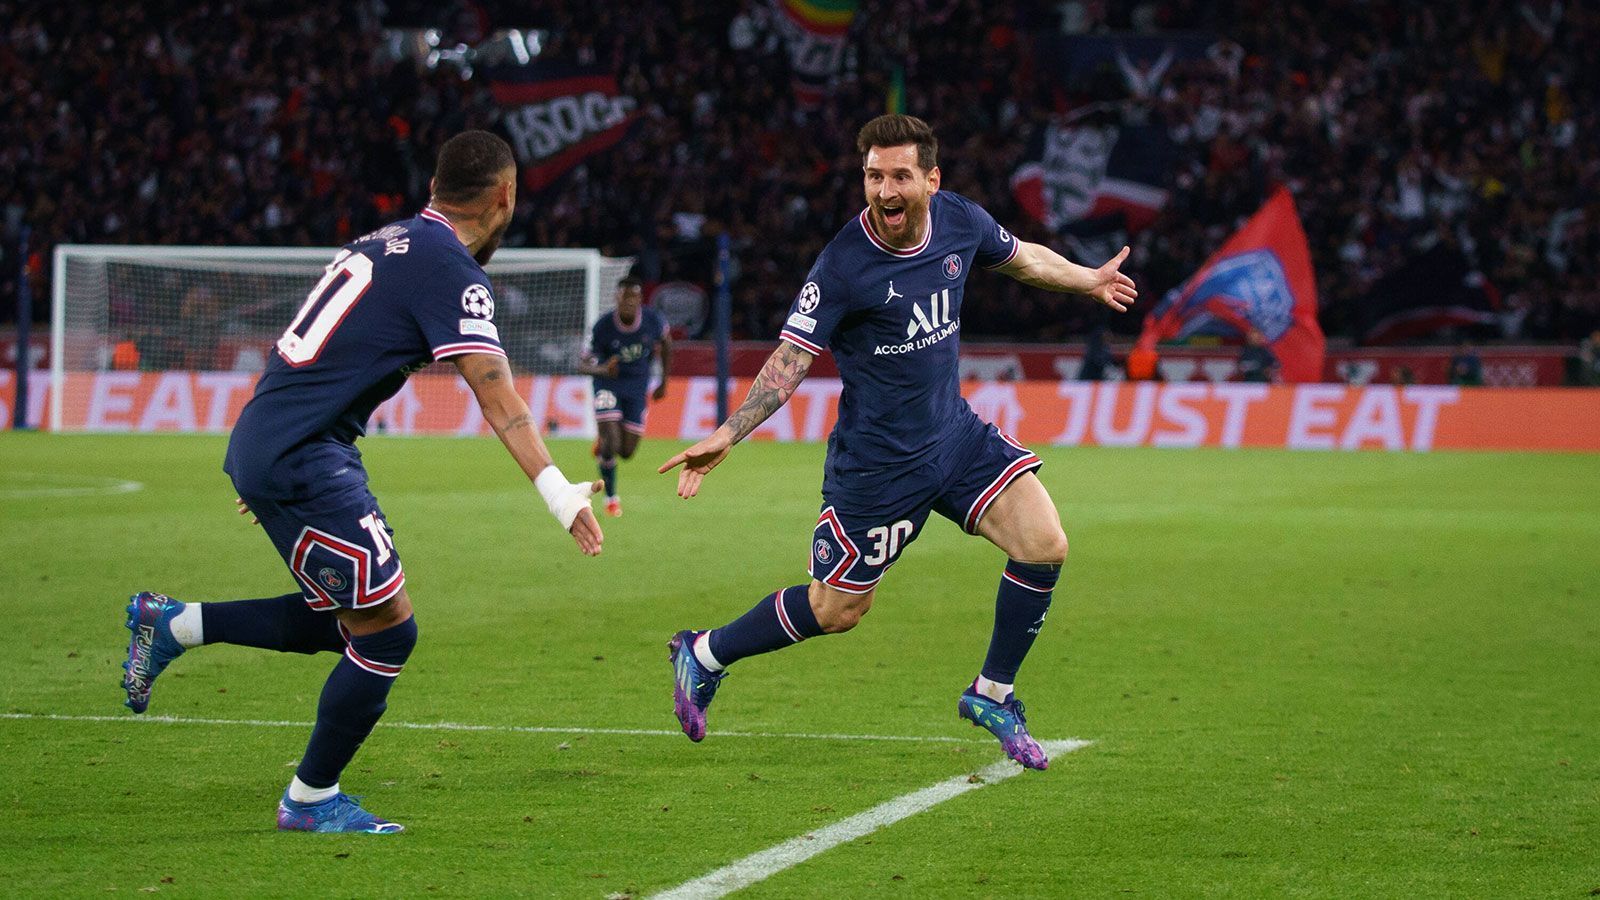 
                <strong>Platz 2: Lionel Messi</strong><br>
                Paris Saint-Germain | Angriff | 34 Jahre | Vorjahresposition: 2
              